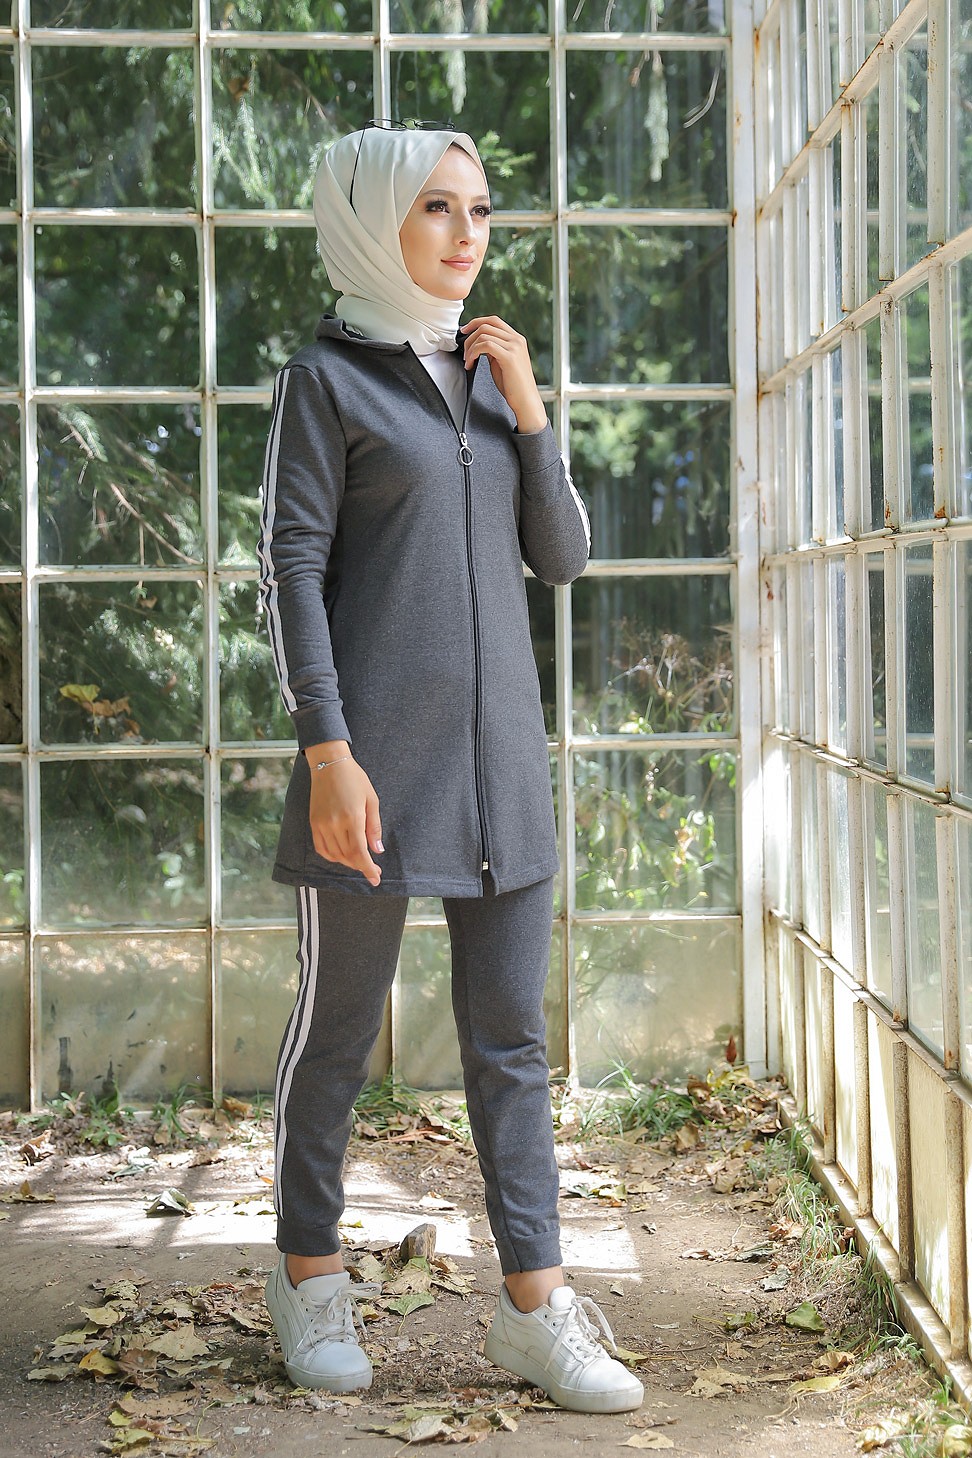 Survêtement pour femme (Tenue Sport Hijab) - Couleur anthracite